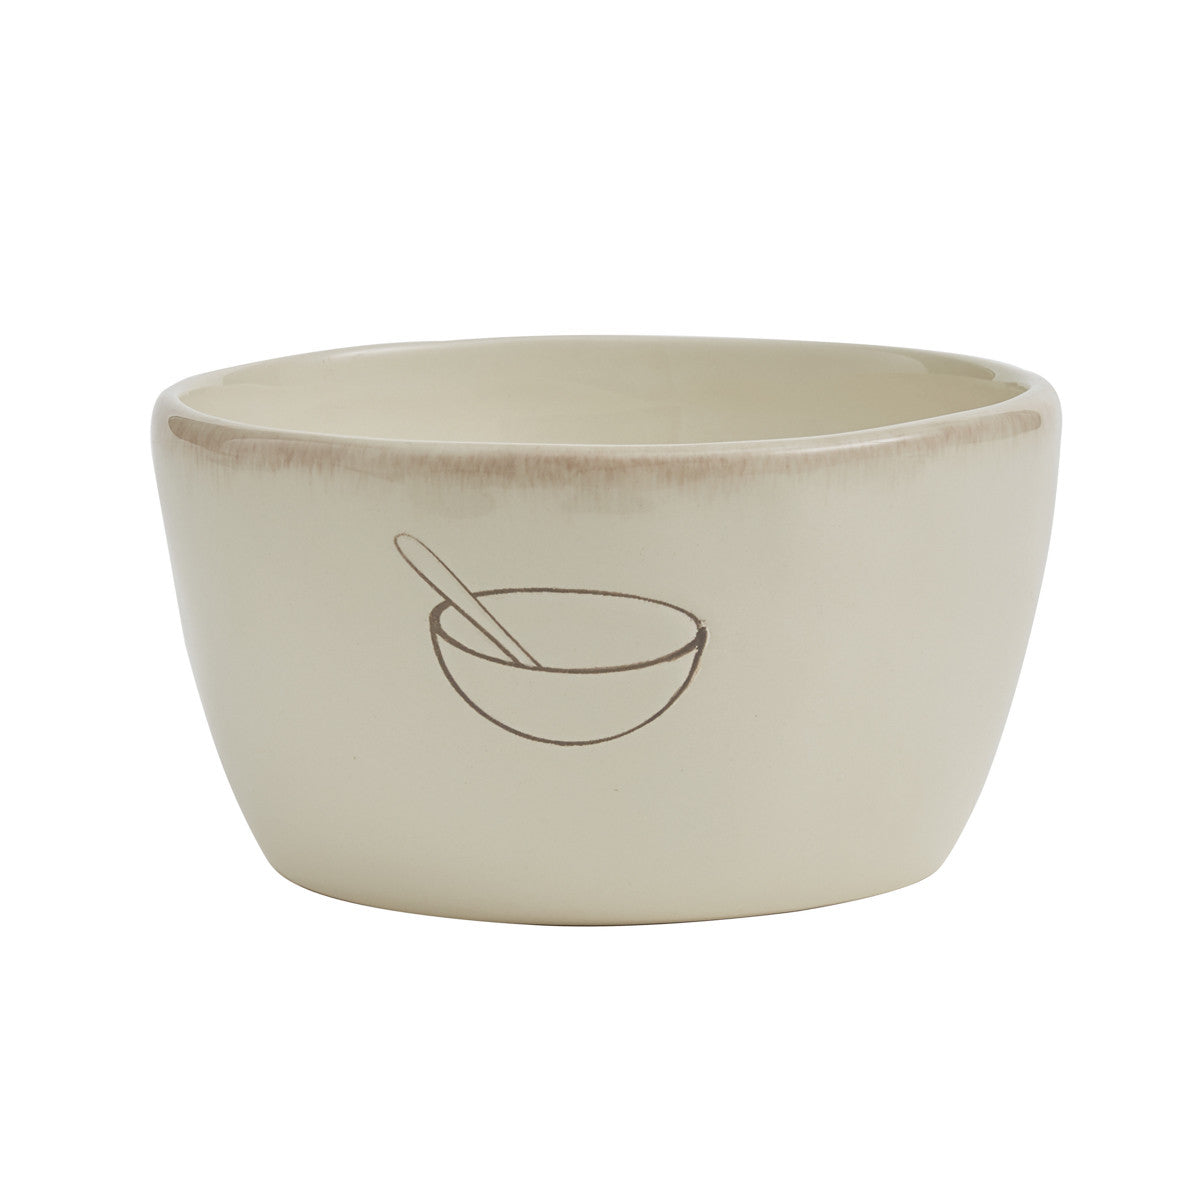 Villager Cereal Bowls - Cream w/Bowl Set of 4 Park Designs